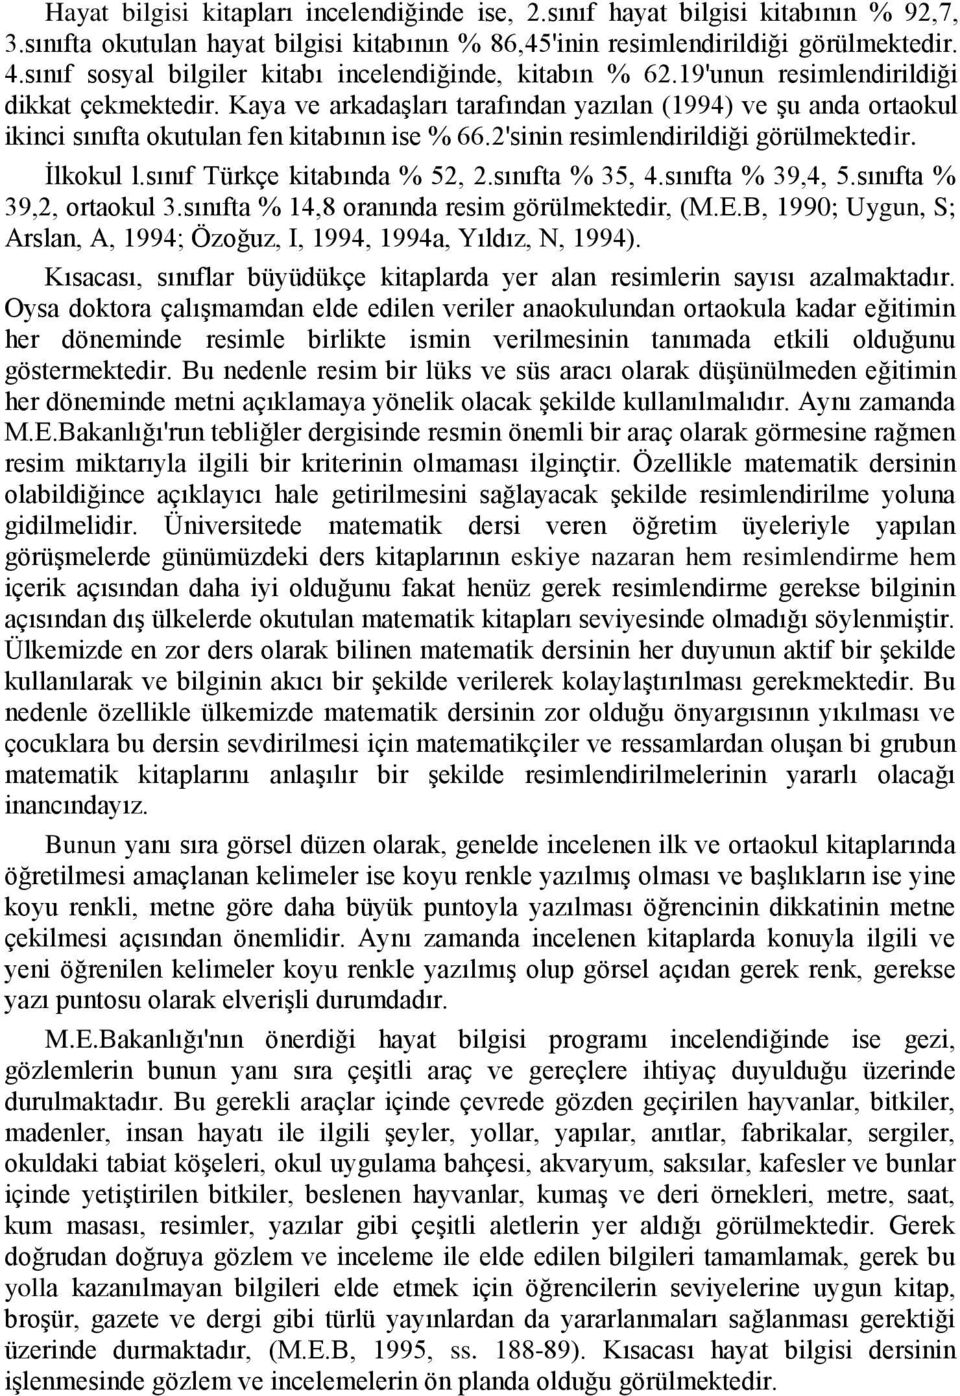 Kaya ve arkadaģları tarafından yazılan (1994) ve Ģu anda ortaokul ikinci sınıfta okutulan fen kitabının ise % 66.2'sinin resimlendirildiği görülmektedir. Ġlkokul l.sınıf Türkçe kitabında % 52, 2.